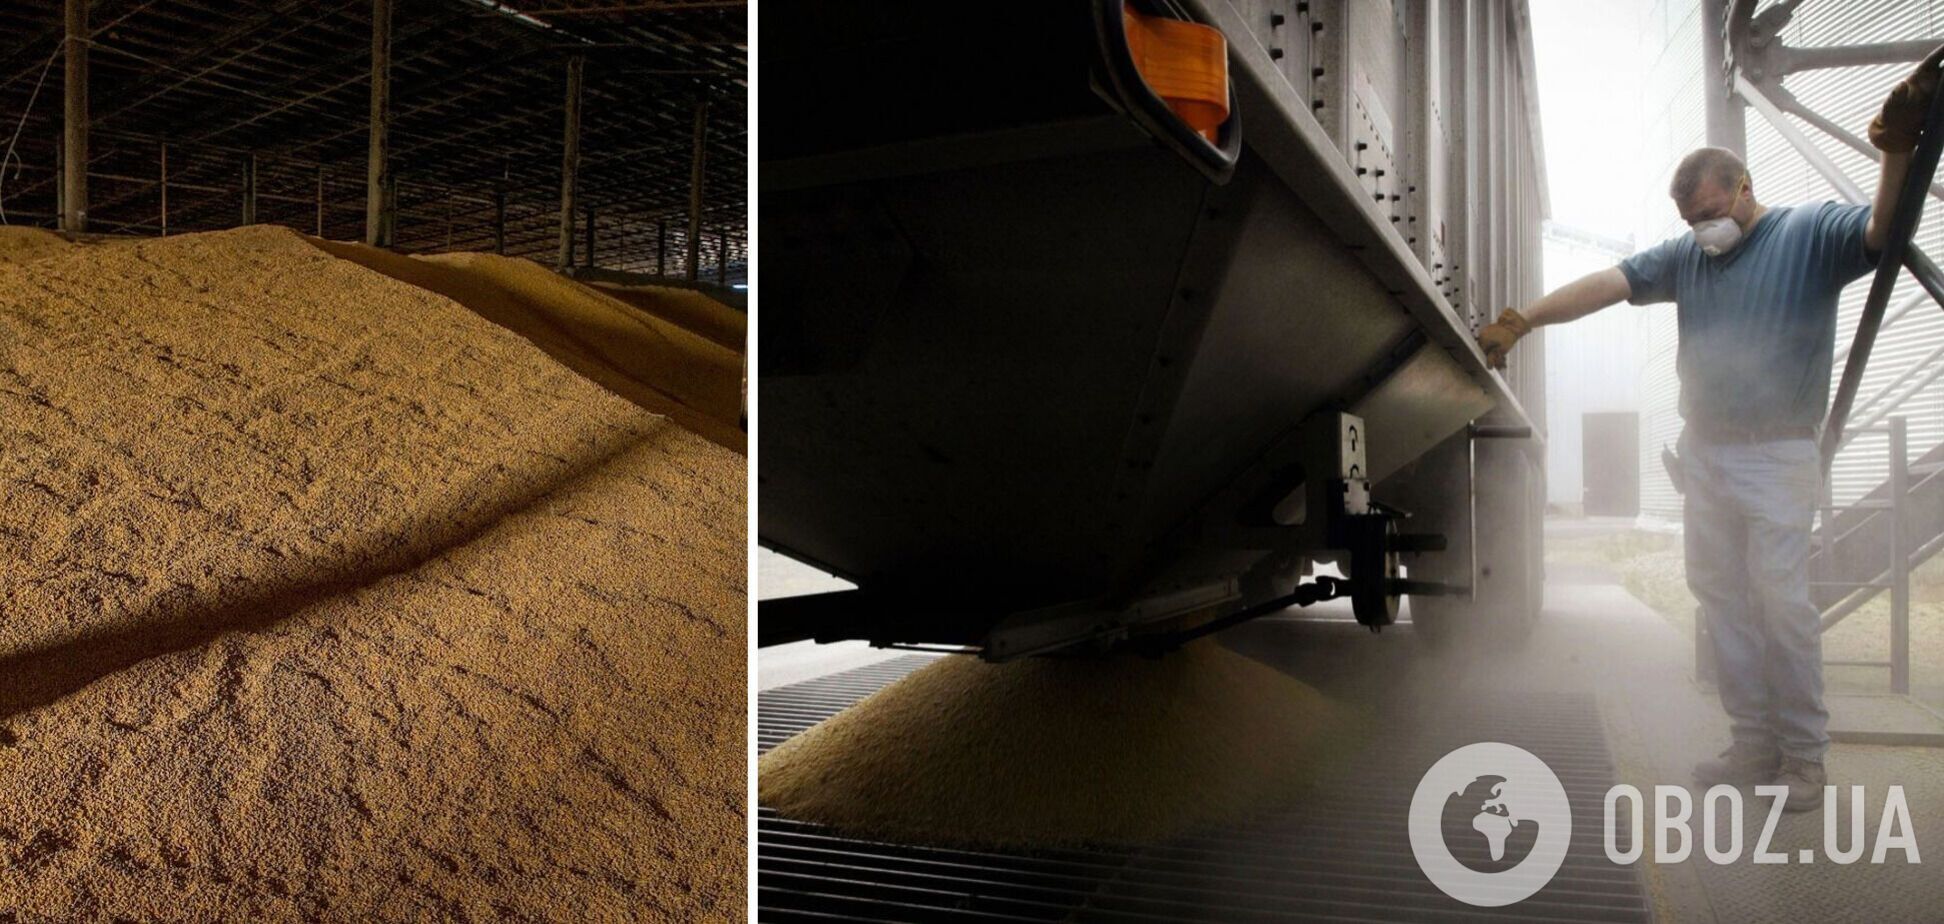 Німеччина допомагає Україні з експортом зерна